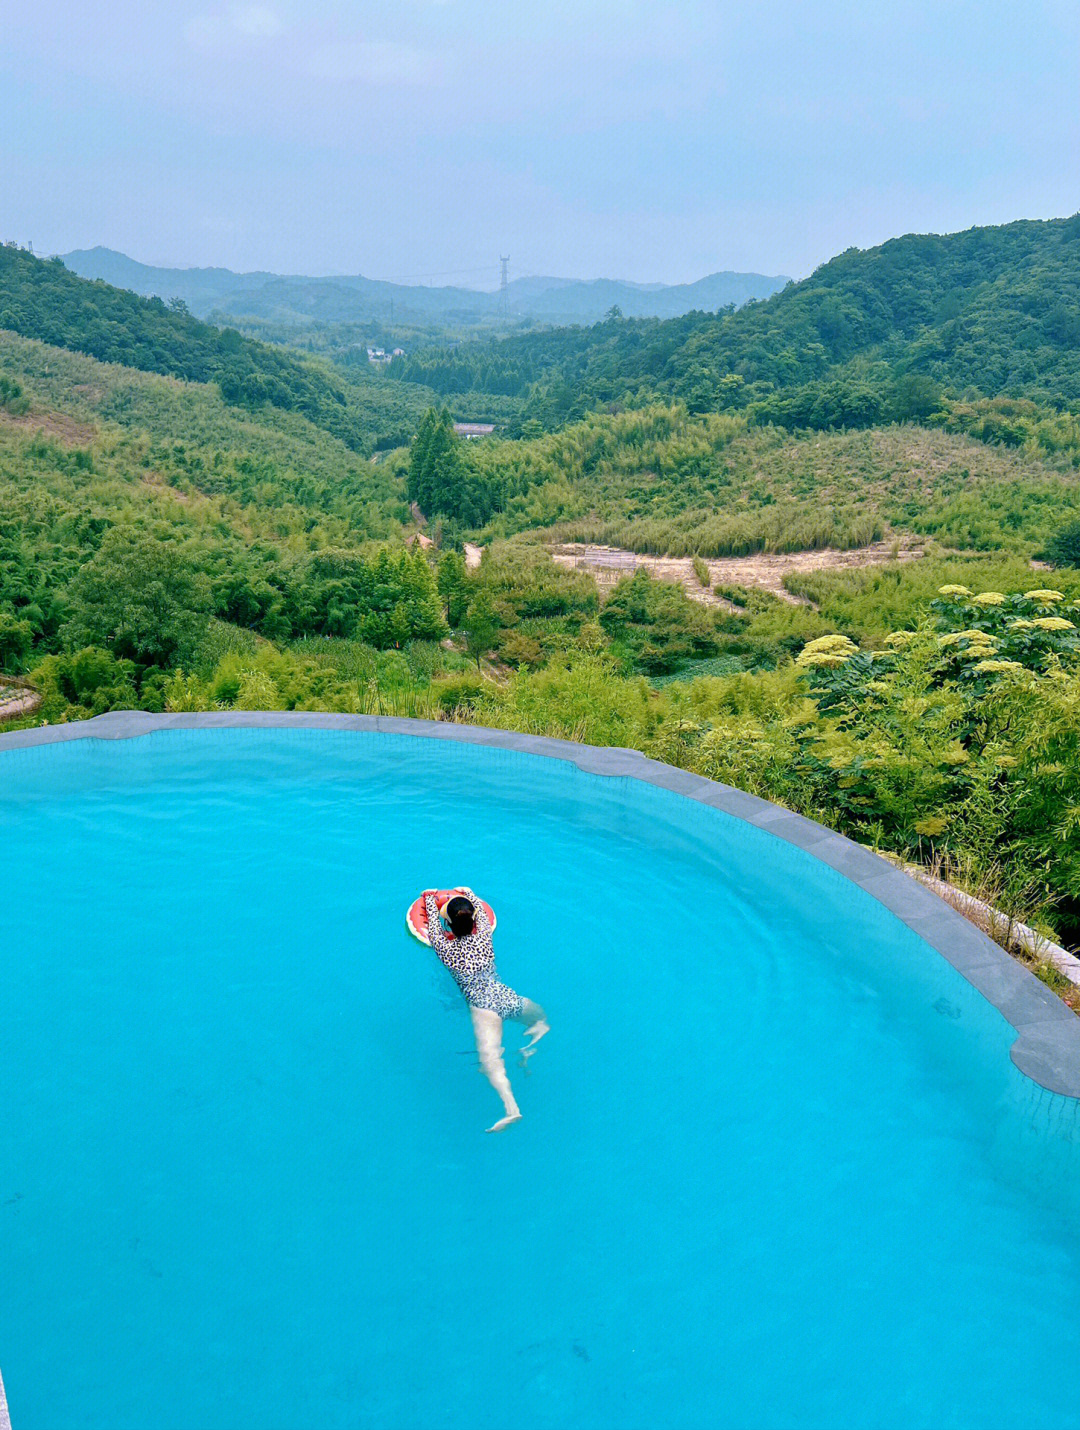 阳江海岛悬崖泳池图片